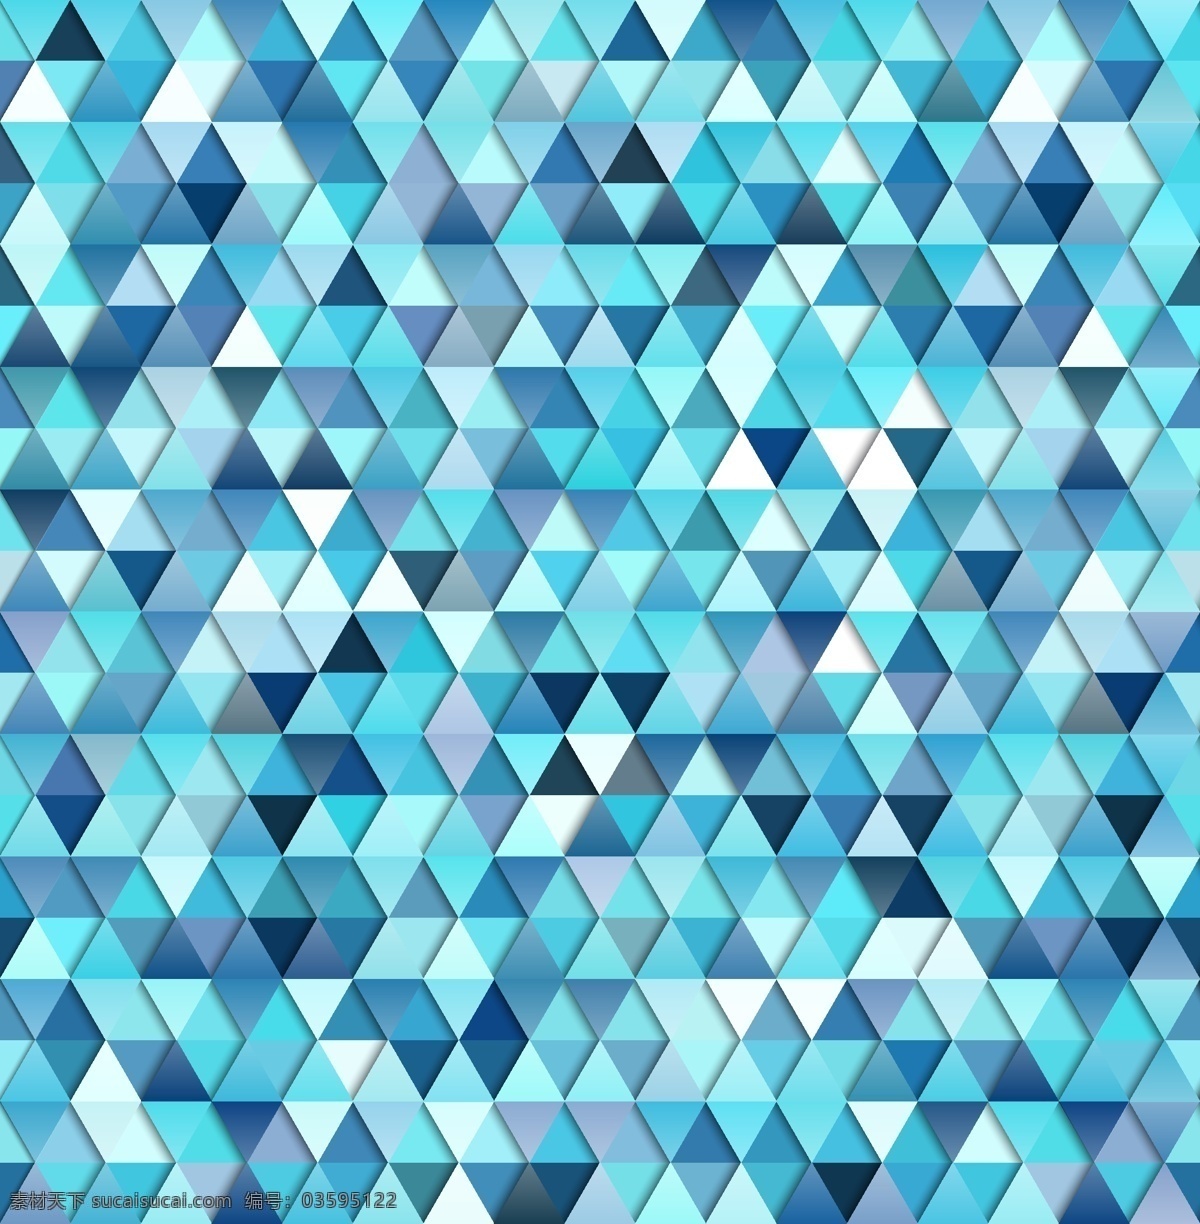 蓝色的背景 背景 模式 抽象背景 抽象 三角形 蓝色背景 蓝色 形状 壁纸 三角形背景 无缝图案 无缝 三角形图案 图案背景 抽象图案 抽象的形状 蓝色图案